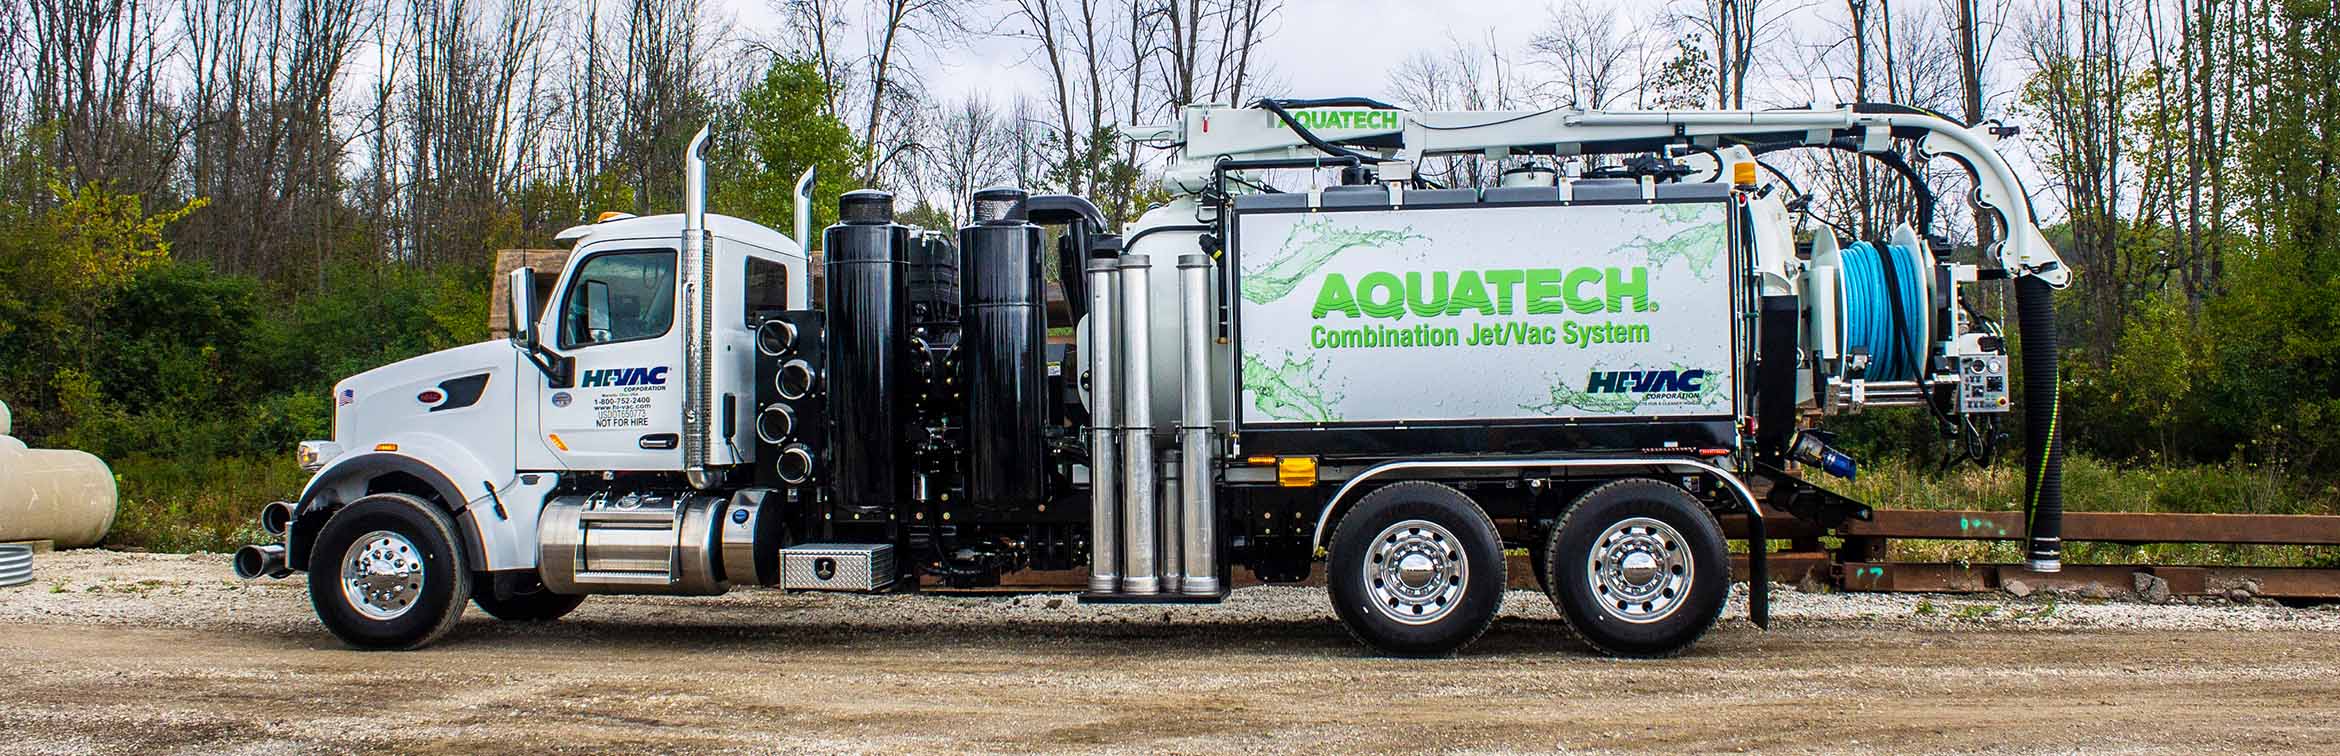 Aquatech B10 Sewer Cleaner